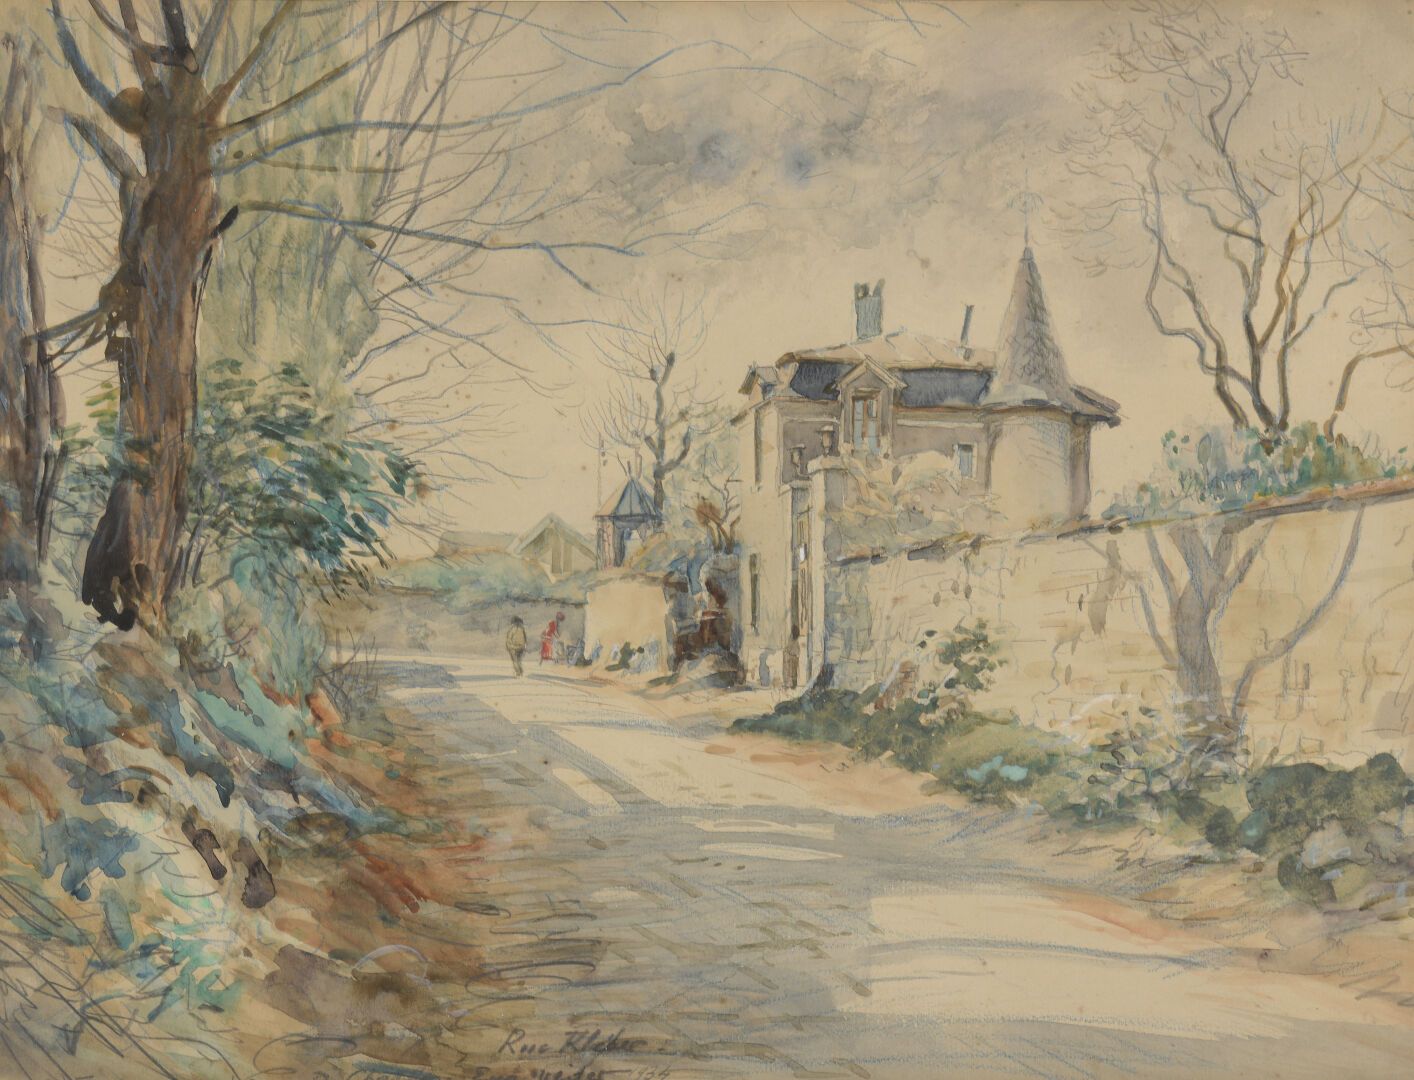 Null 欧仁-维德 (1876-1936)

夏蒂永的克莱伯街 1934年

水彩画和印度墨水。

左下方有签名、位置和日期。

39,6 x 30,4 cm